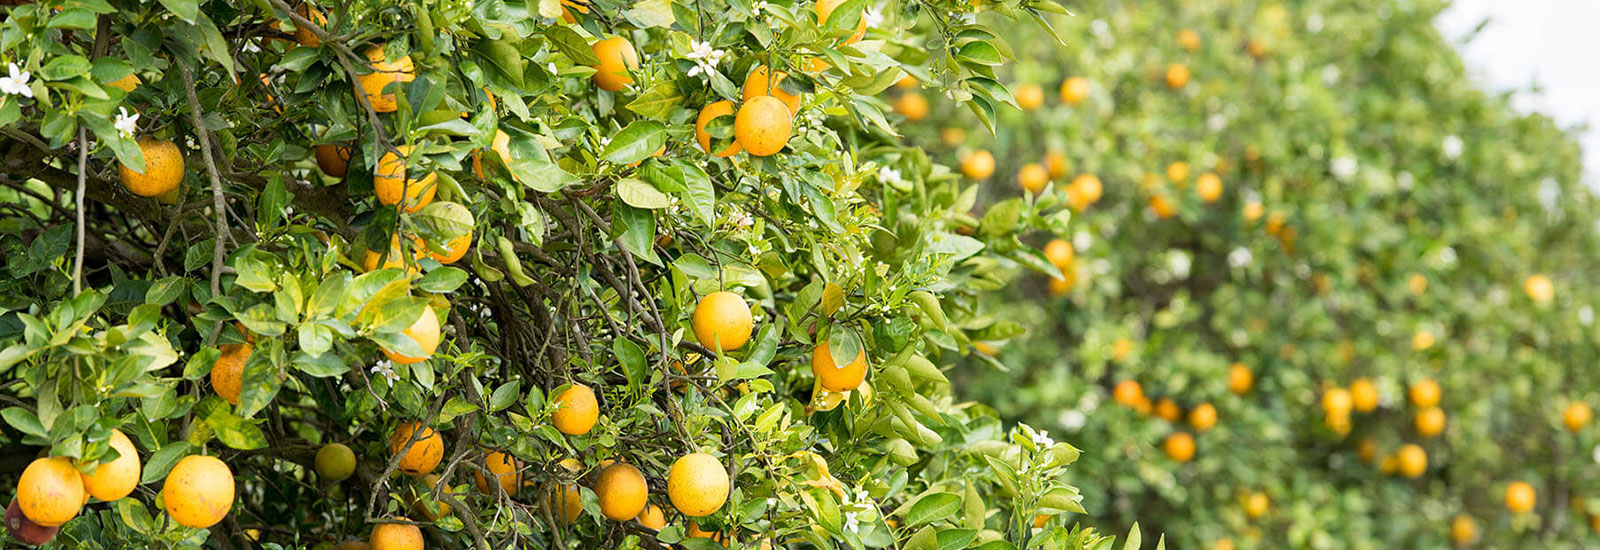 Rapid identification of antibiotics useful in the control of citrus greening disease